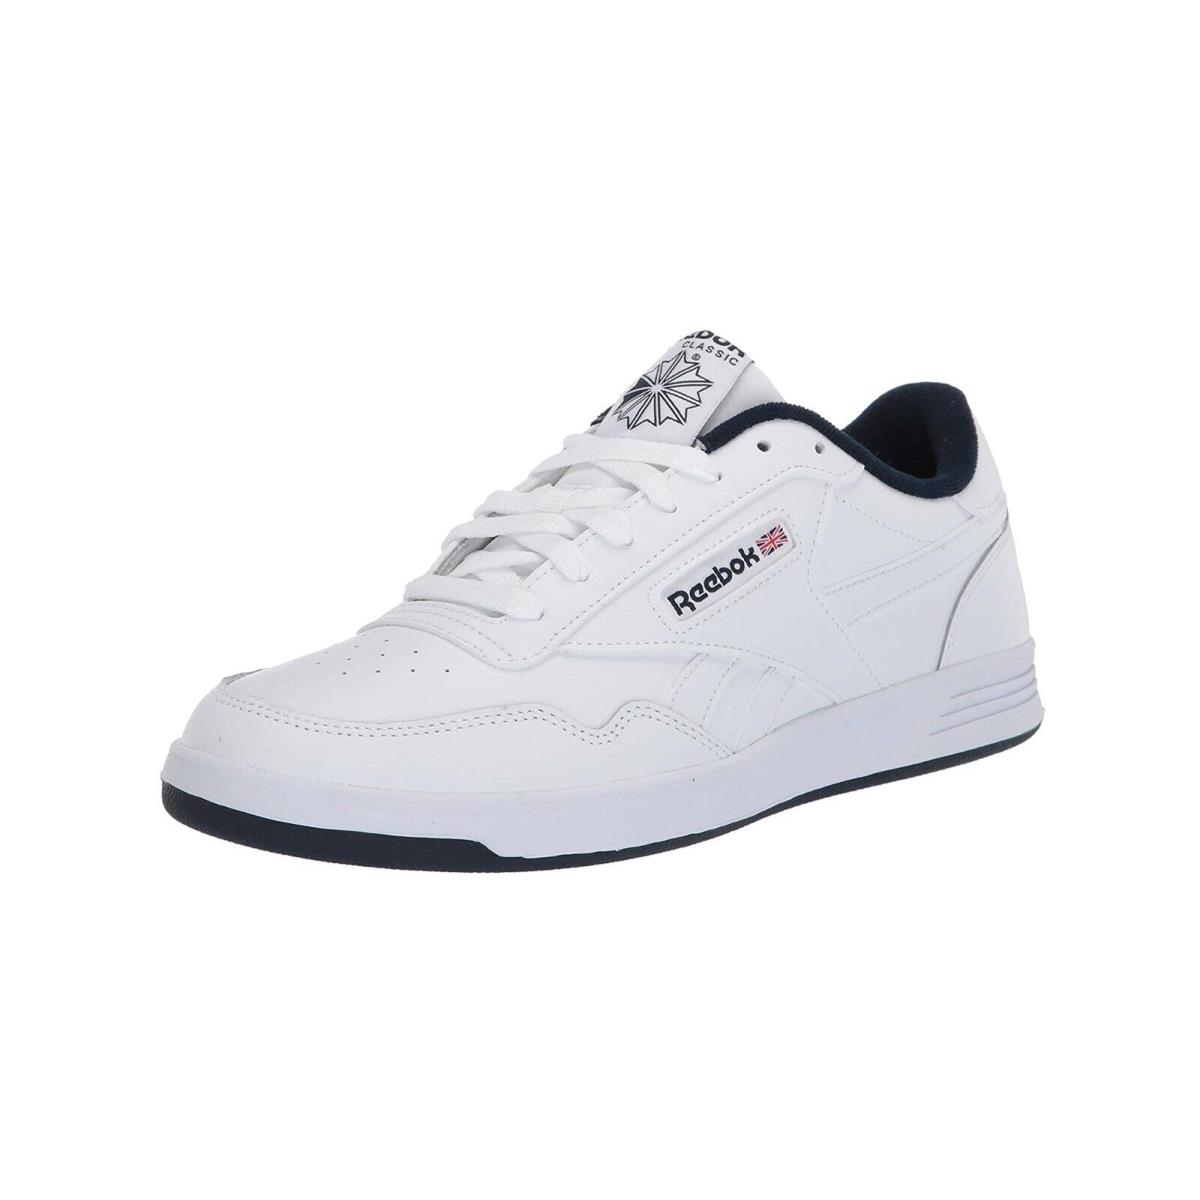 Reebok Club Memt White Faux Leather Navy Blue Memory Foam Men Tennis Shoes - White